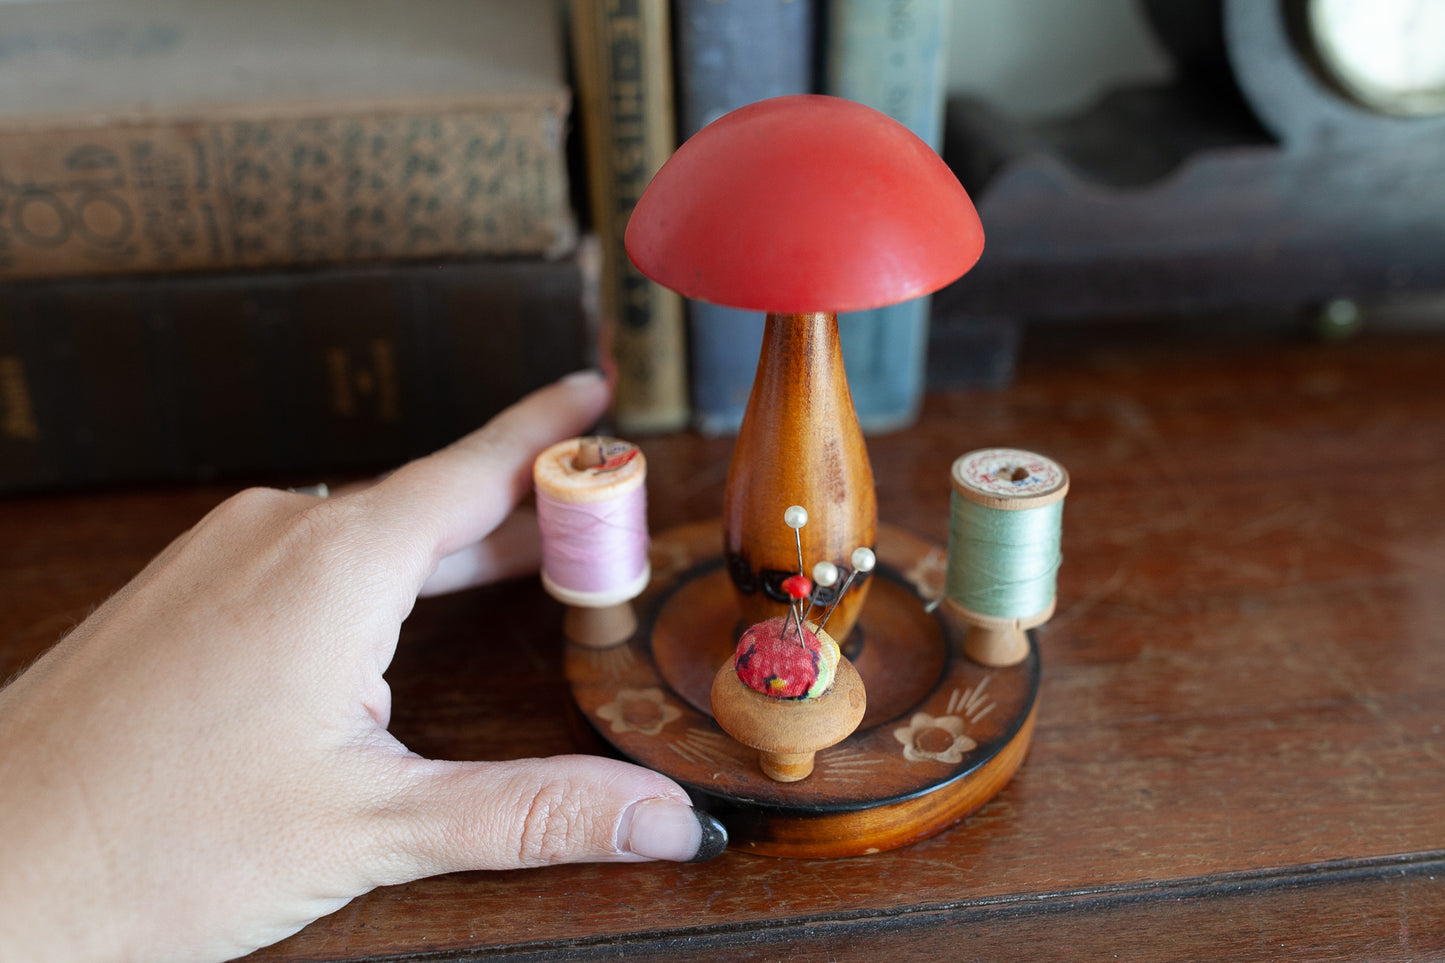 Vintage Mushroom - Mushroom Vintage Sewing Caddy - Thread and Pin Holder